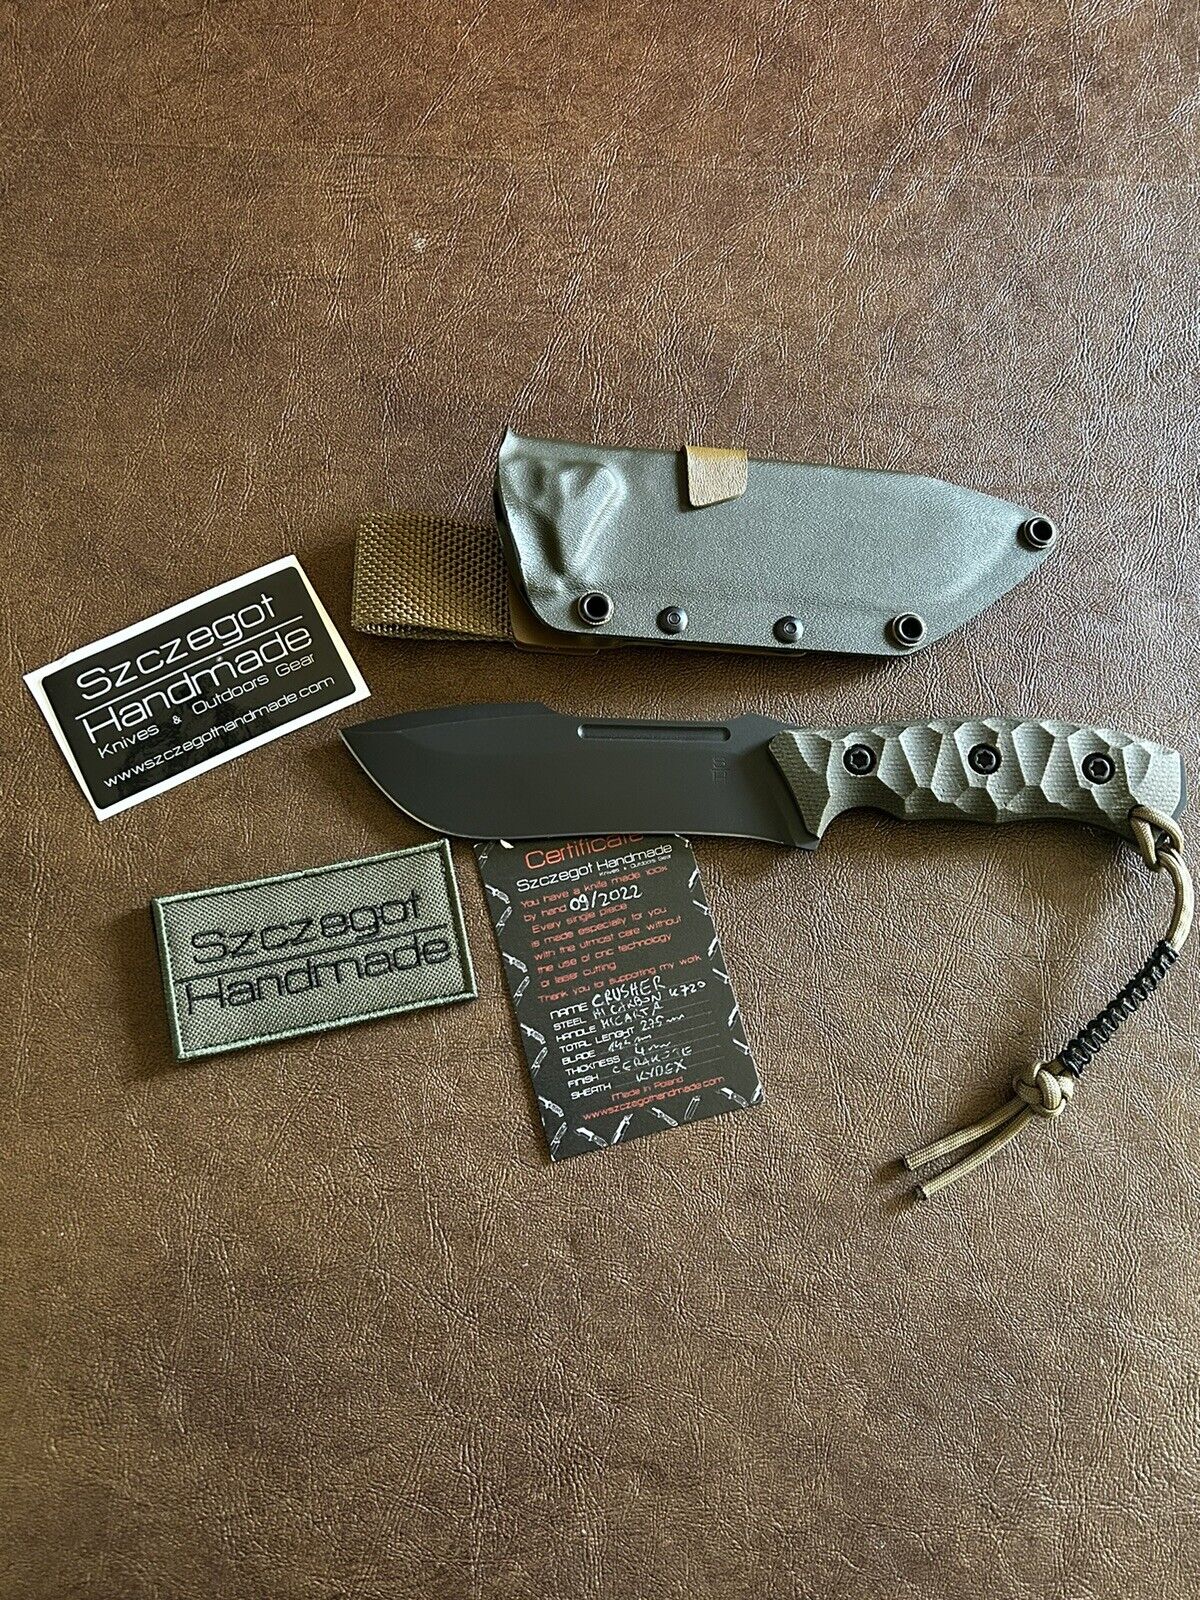 Szczegot Handmade Tactical Knife CRUSHER Model, Michael Szczegot, MINT